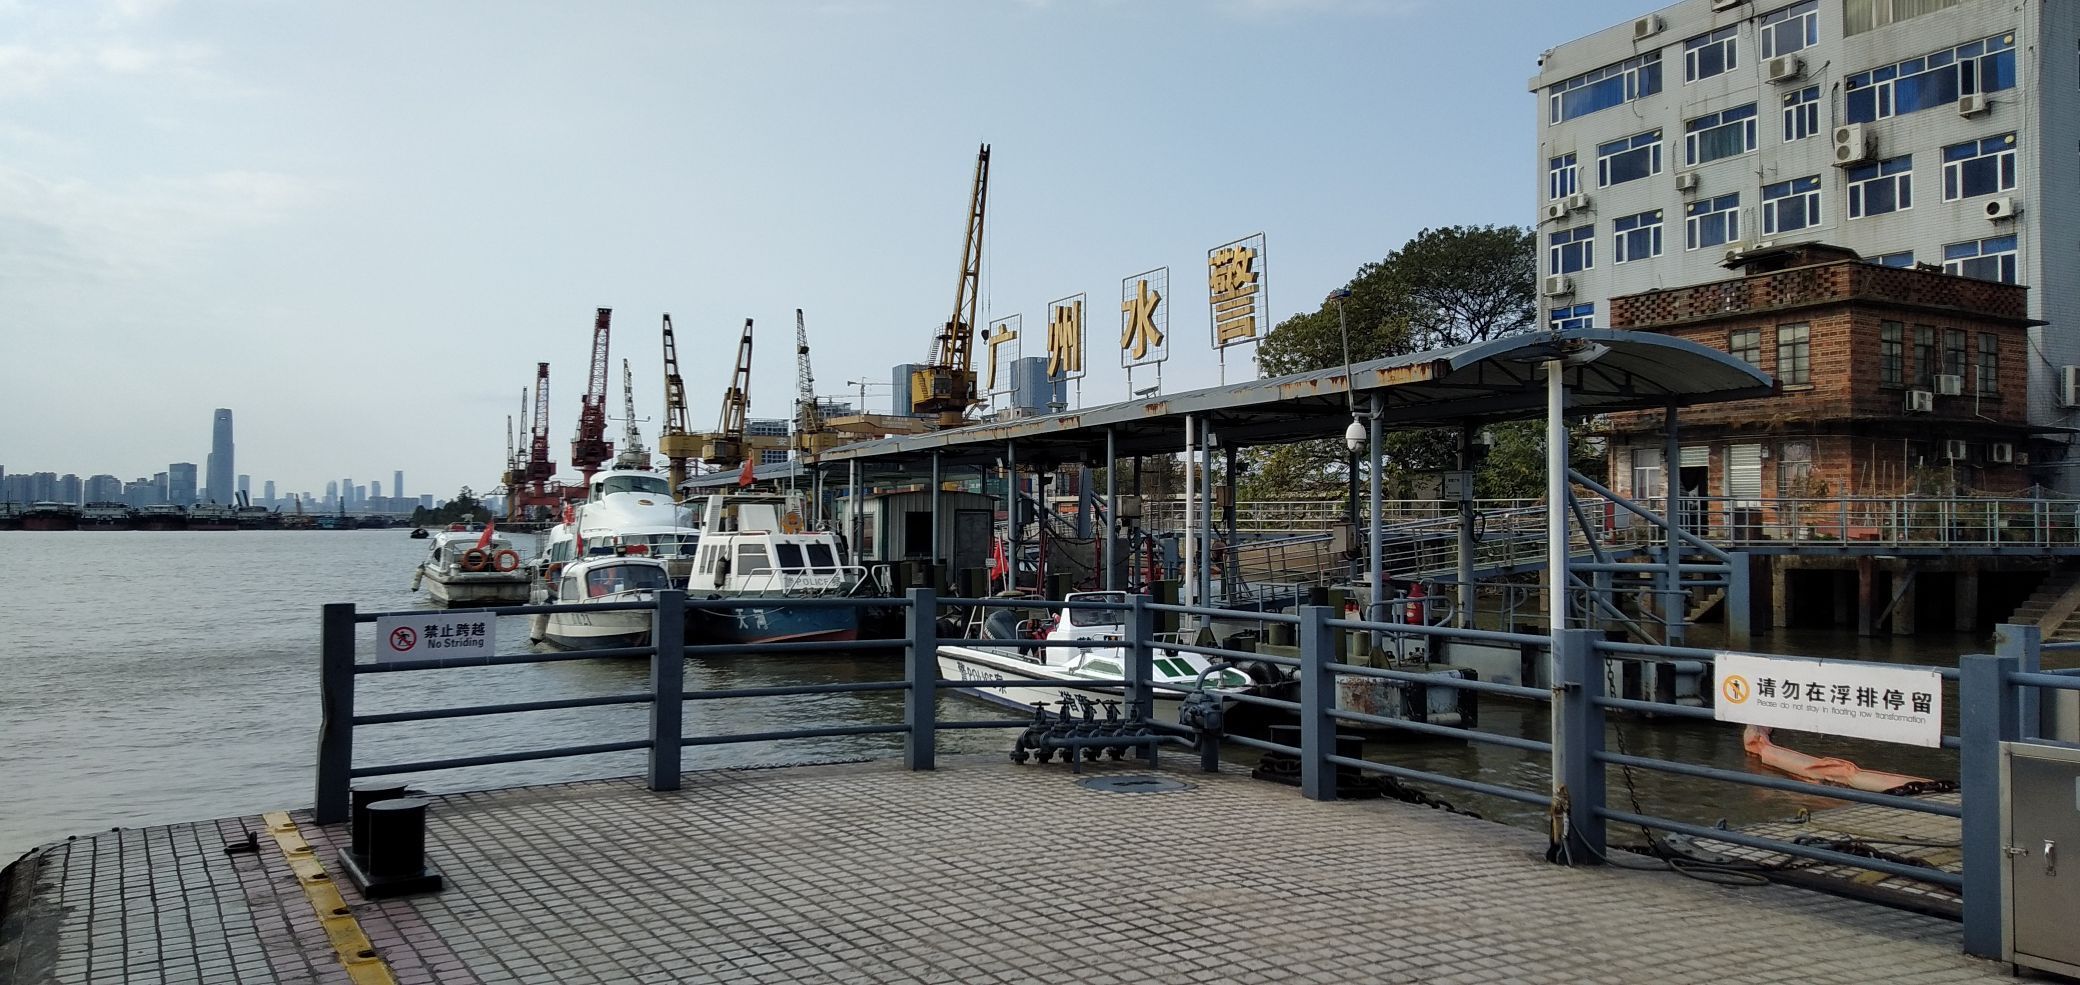 广州渔人码头攻略,广州渔人码头门票/游玩攻略/地址/图片/门票价格【携程攻略】